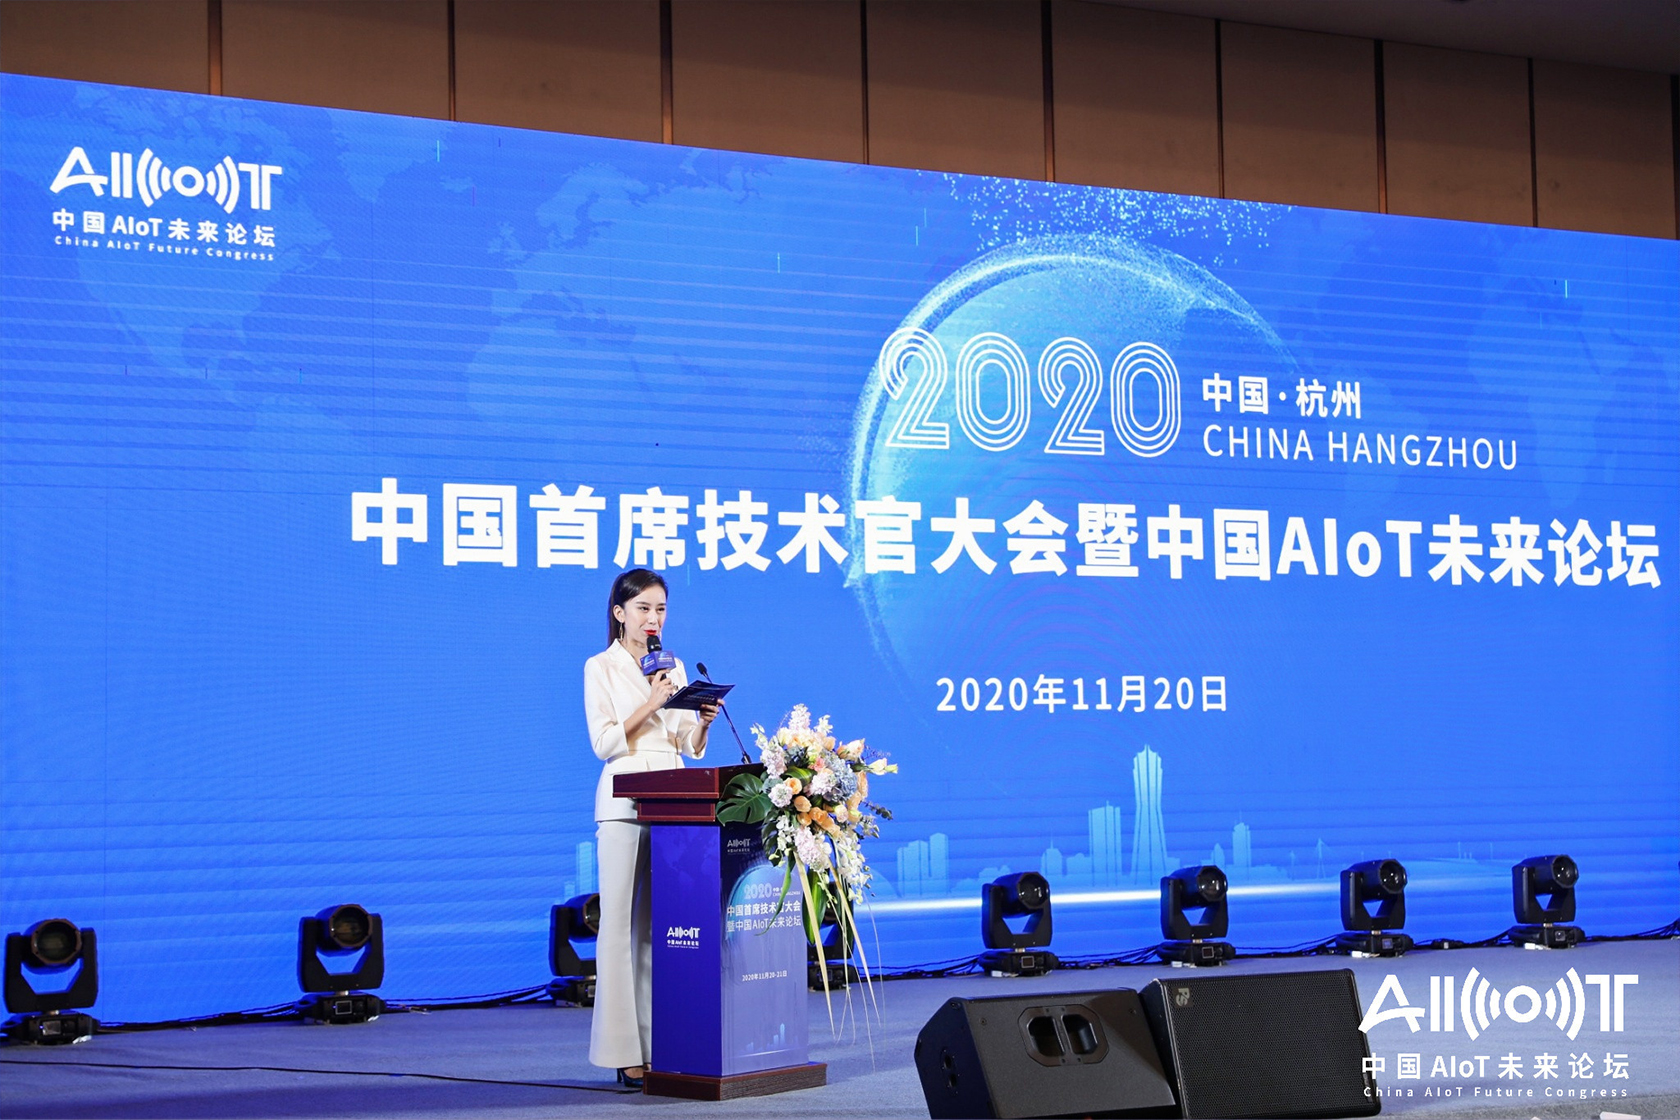 2020中国首席技术官大会暨中国AIoT未来论坛 智能科技企业展览-3